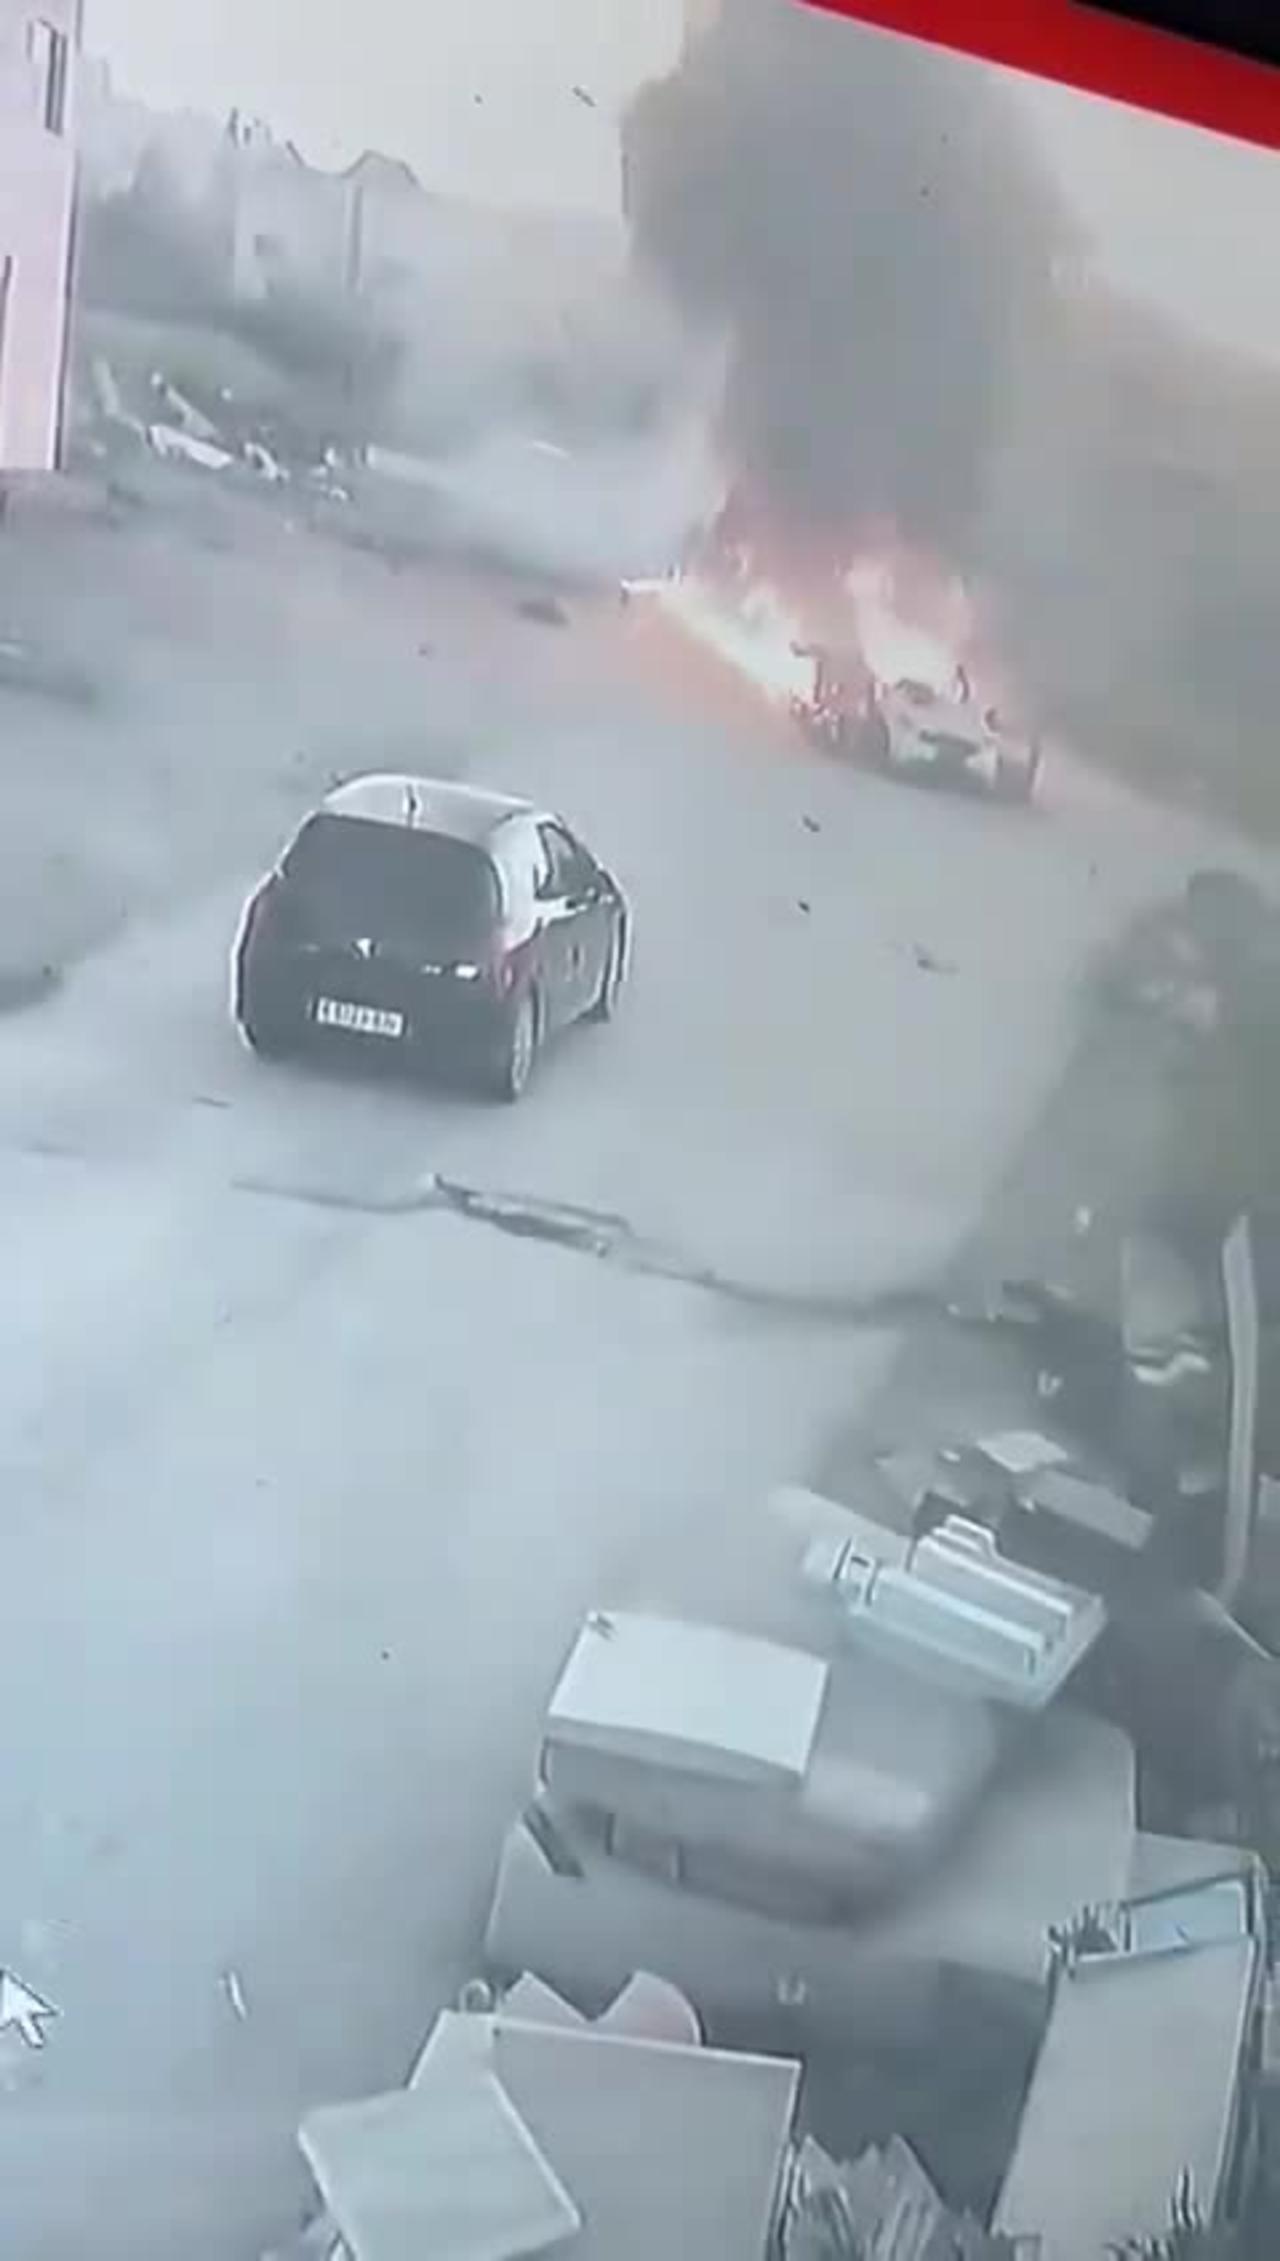 Footage shows the Israeli drone strike on Palestinian gunmen in Jenin